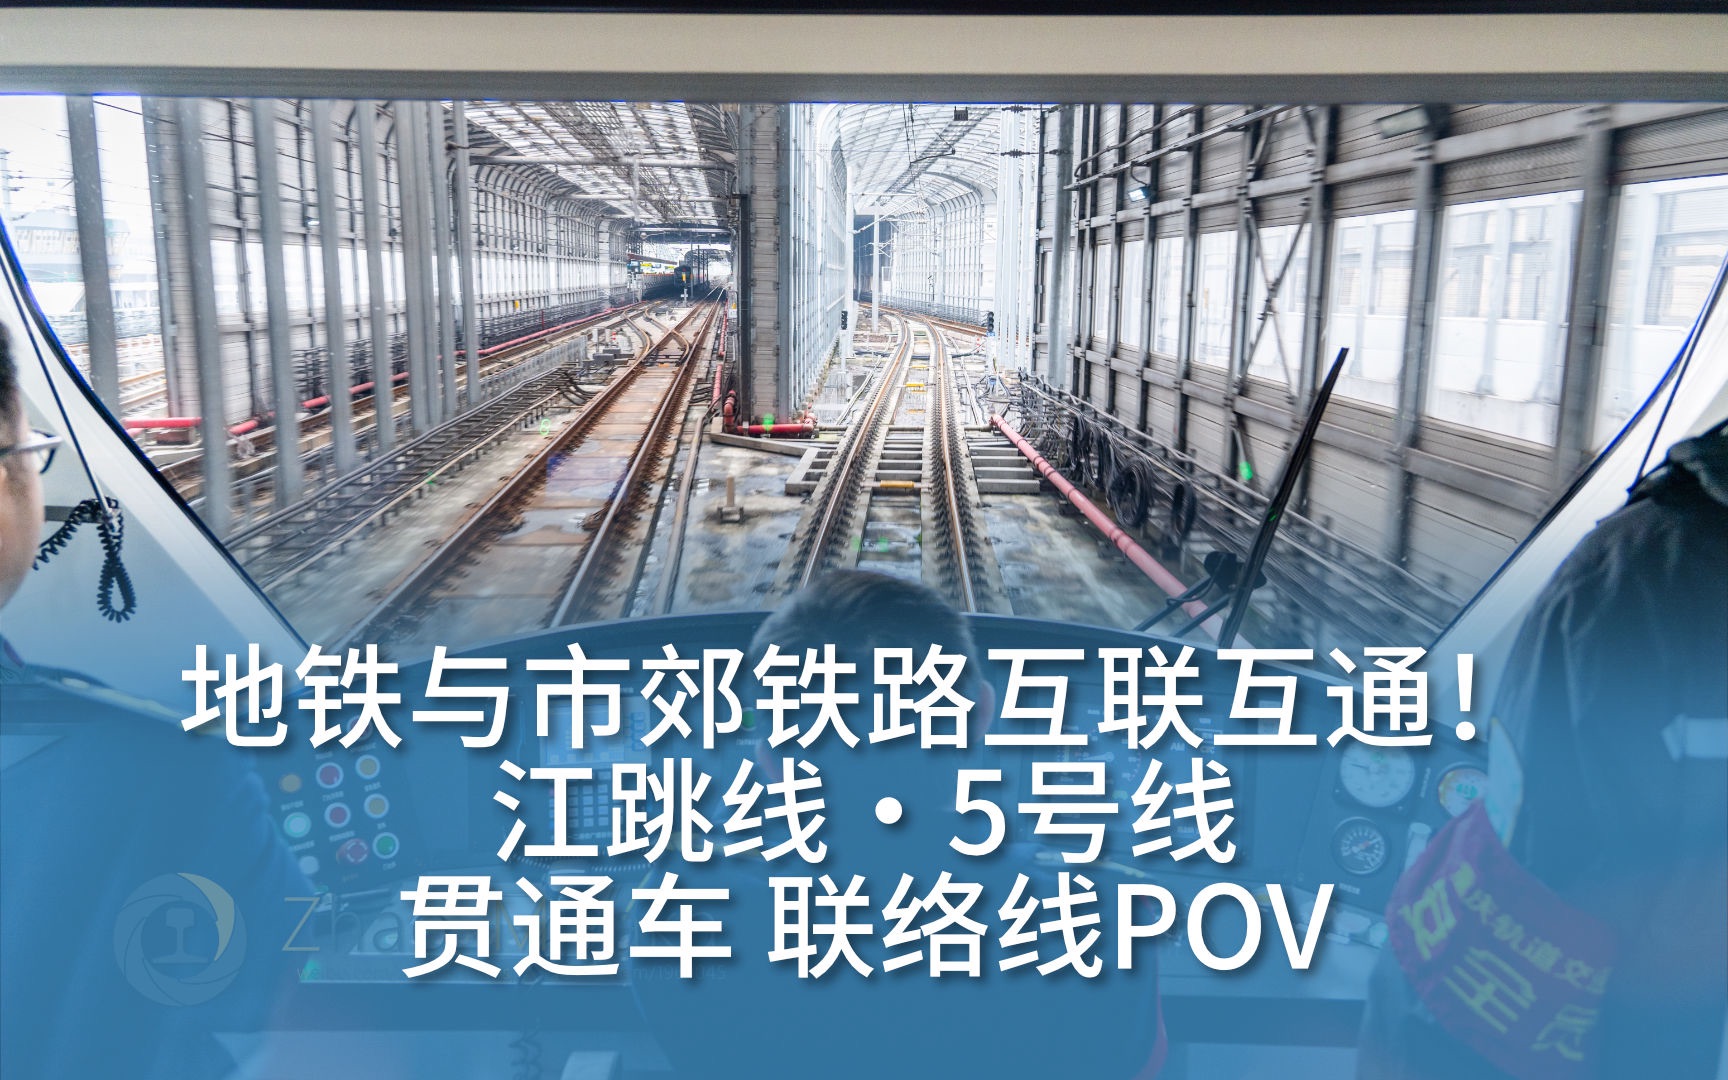 【重庆轨道】地铁与市郊铁路互联互通!江跳线·5号线贯通车 跨线pov